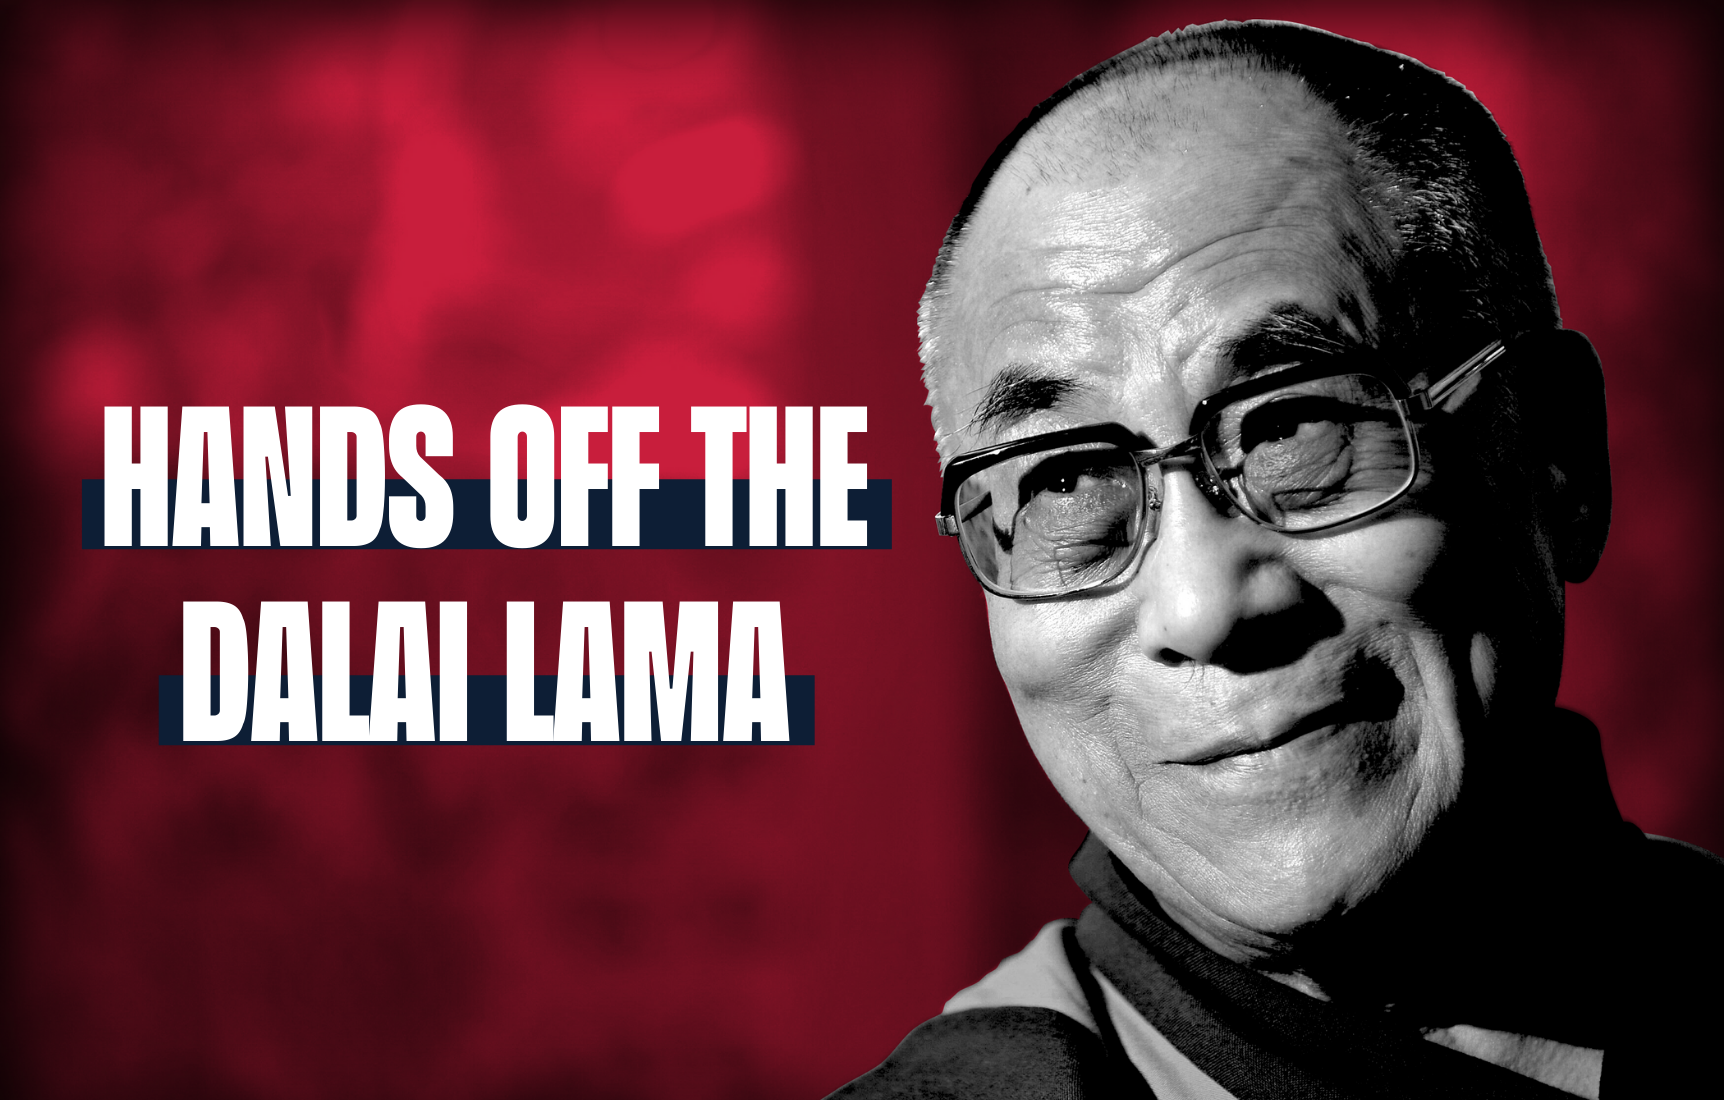 Hands off the Dalai Lama